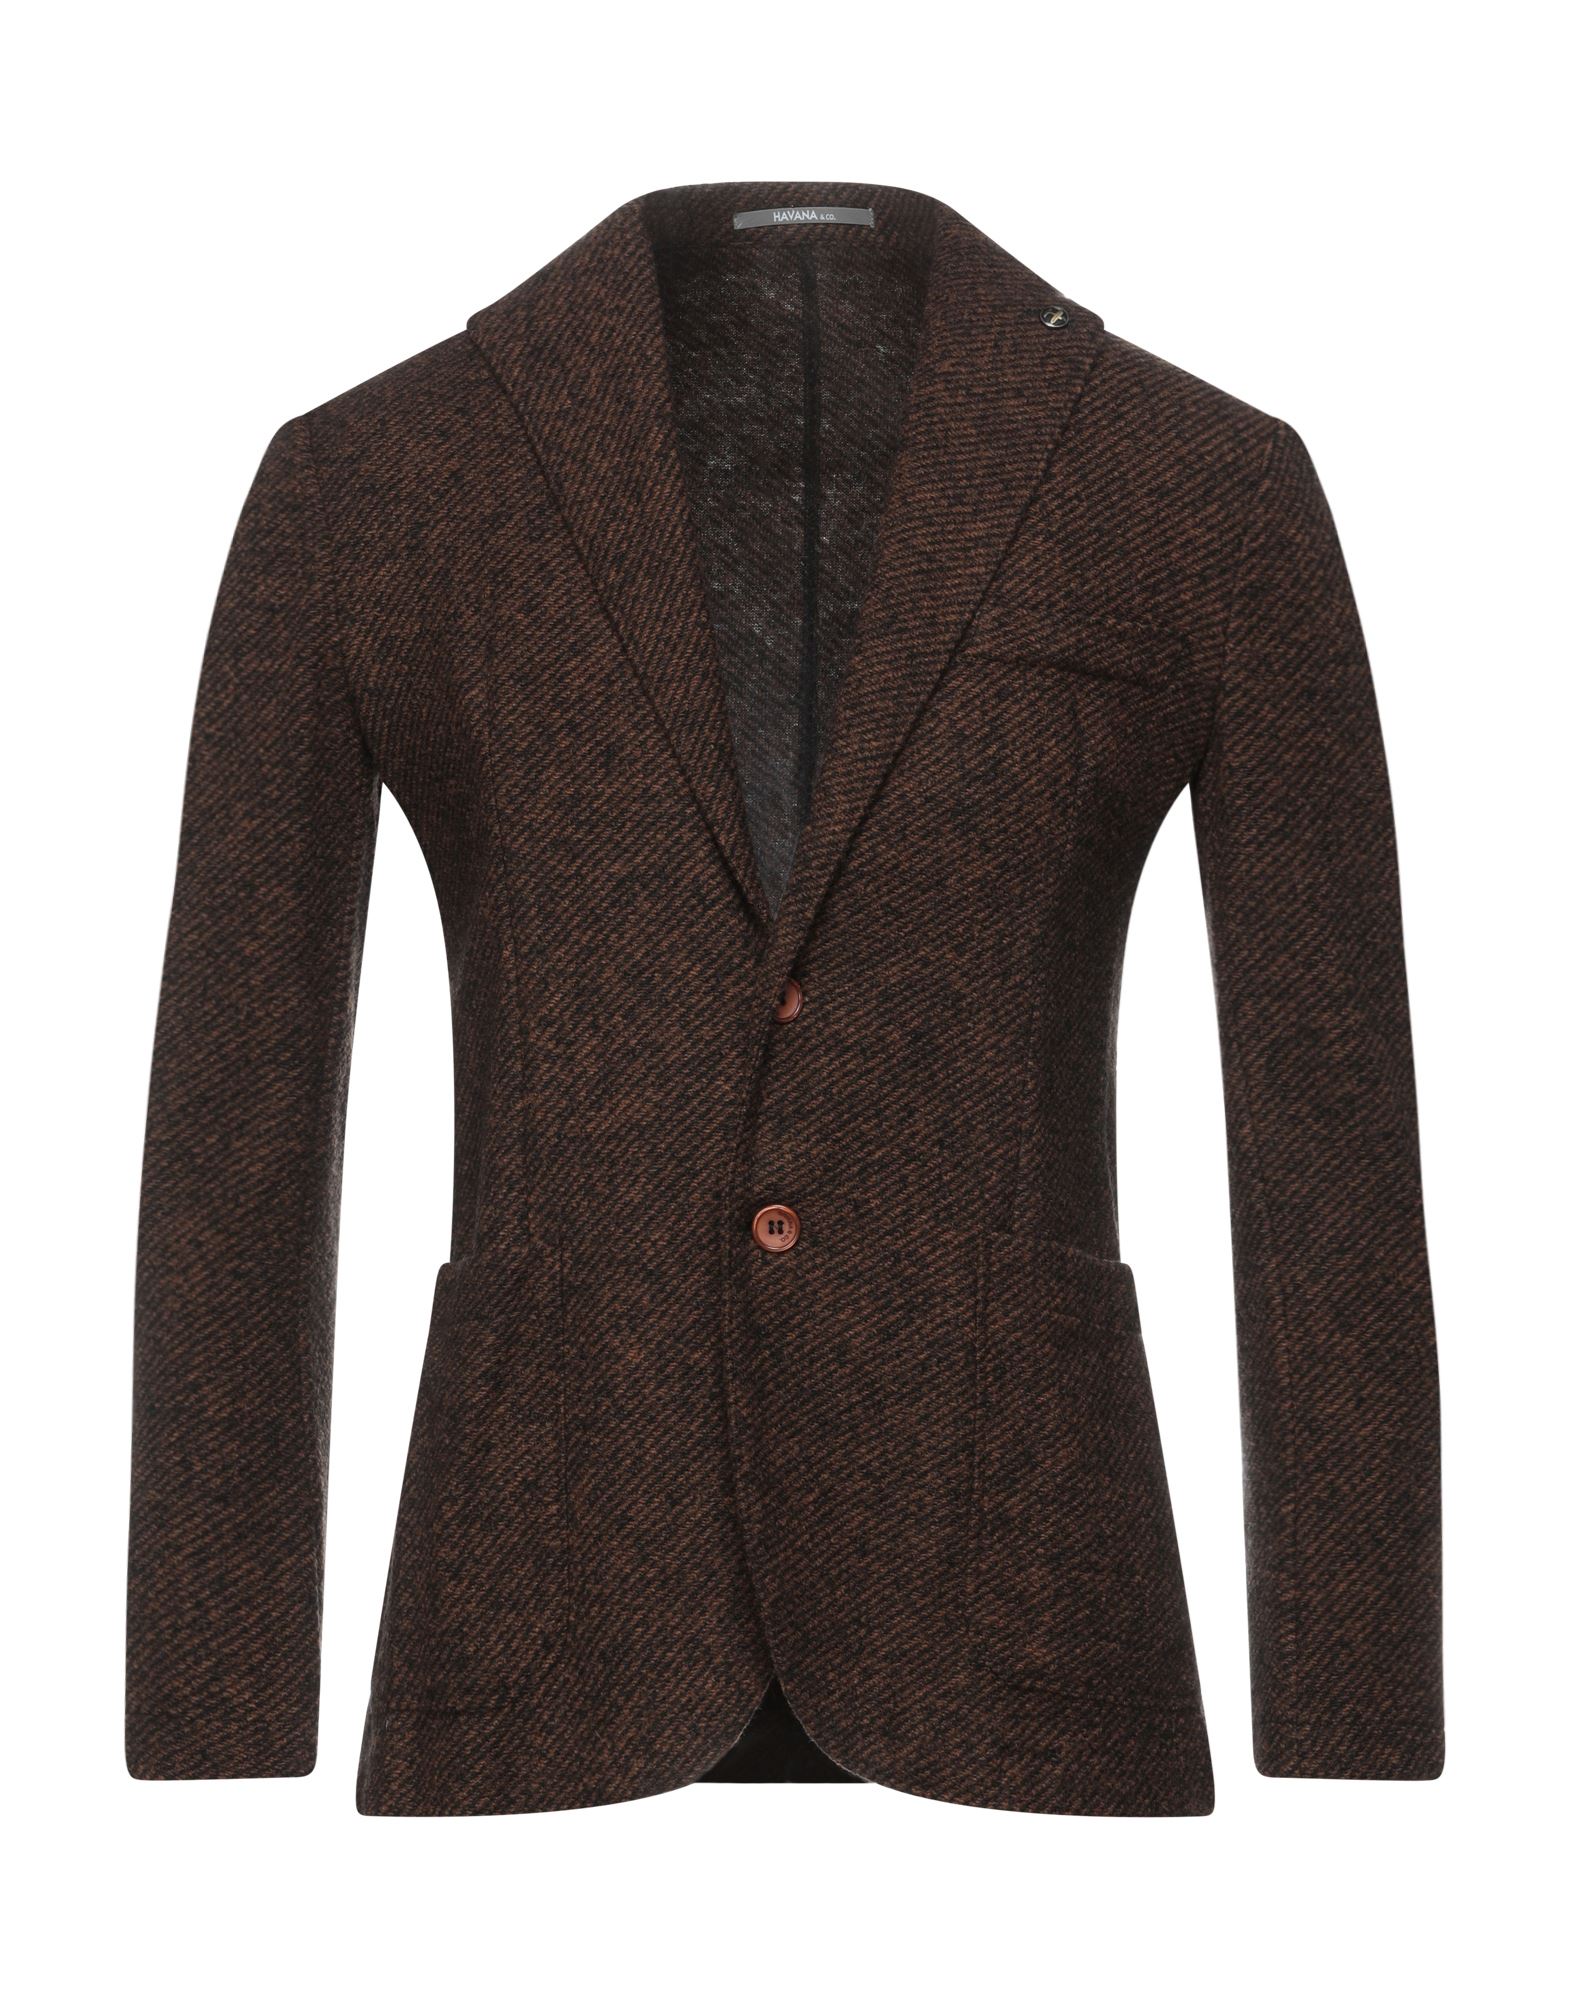 Havana & Co. Suit Jackets In Brown